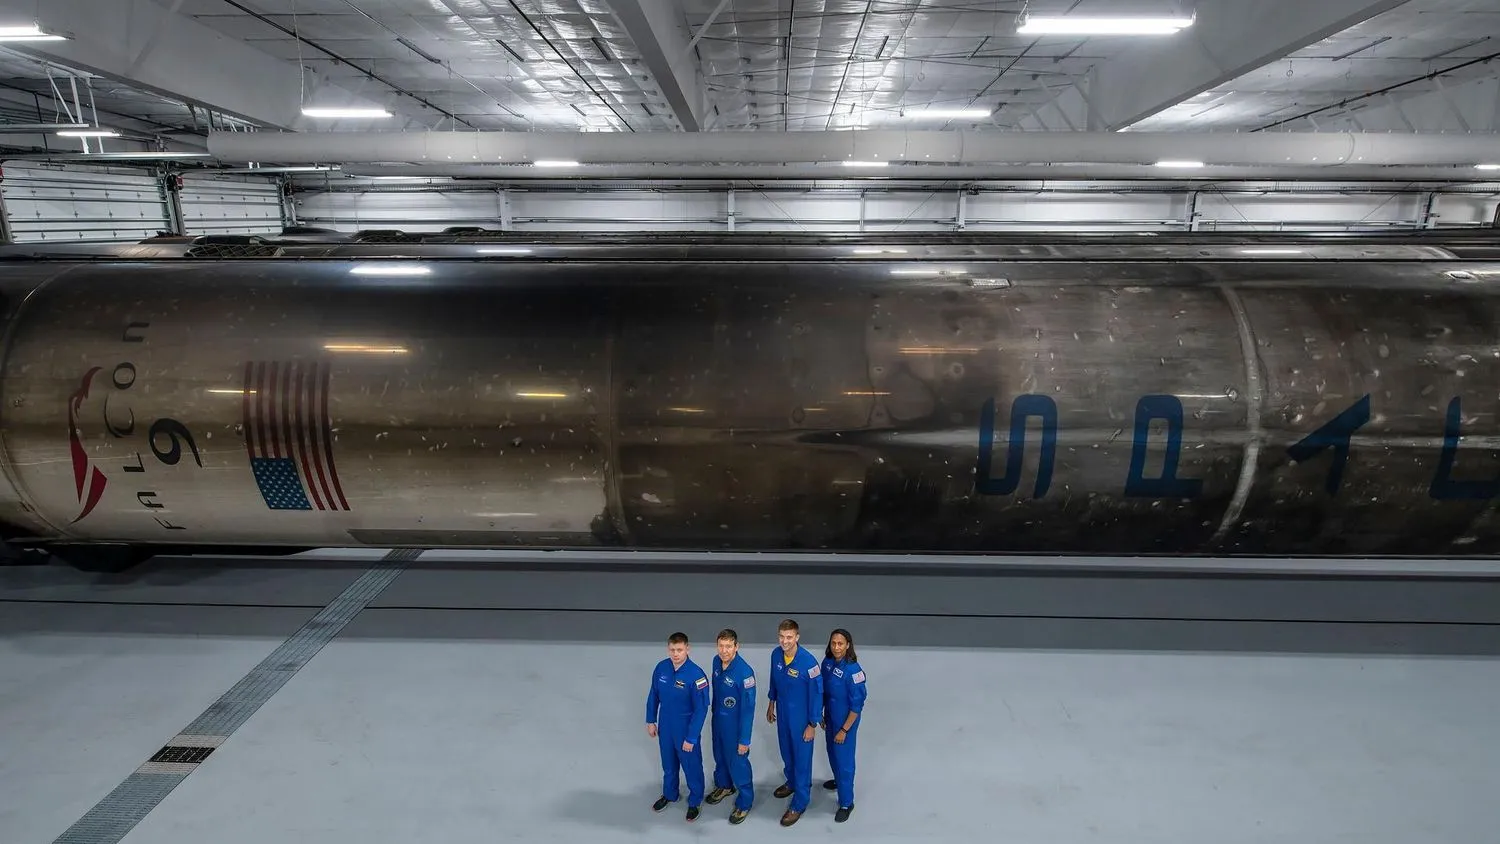 Vier Menschen in blauen Overalls stehen in einem großen weißen Hangar mit einer relativ niedrigen Decke. Hinter ihnen, auf der Seite liegend, befindet sich ein rußiger Raketenbooster, schwarz verschmiert von der Kohle, die bei früheren Flügen durch die Erdatmosphäre zurückkehrte.